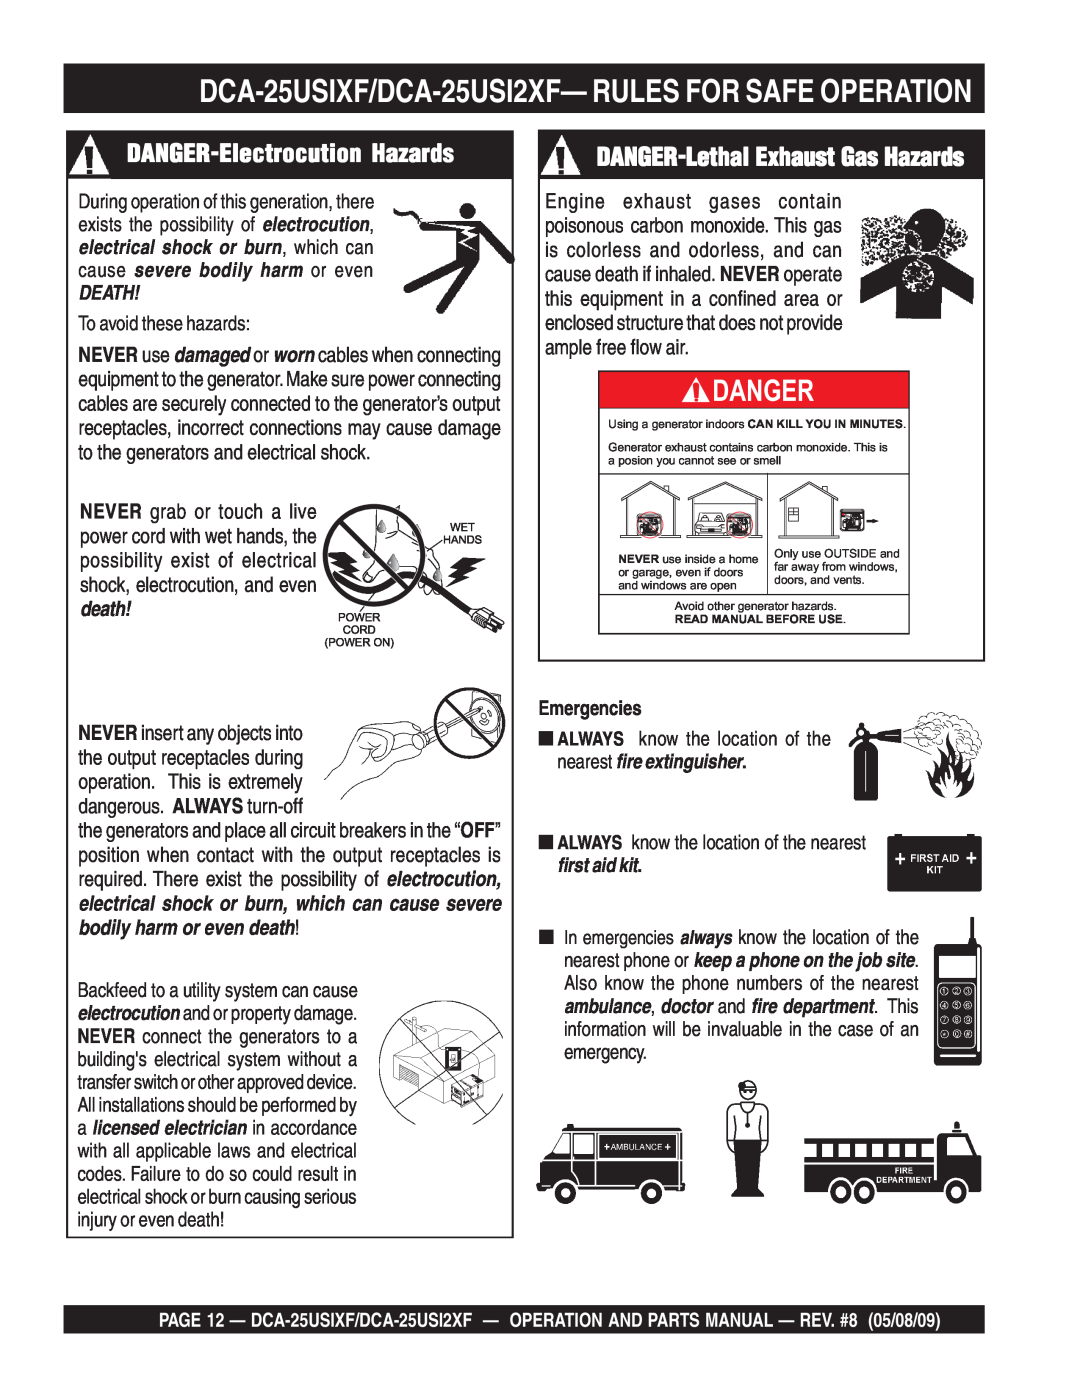 Multiquip DCA-25USIXF DANGER-Electrocution Hazards, DANGER-Lethal Exhaust Gas Hazards, Danger, Death, Emergencies 